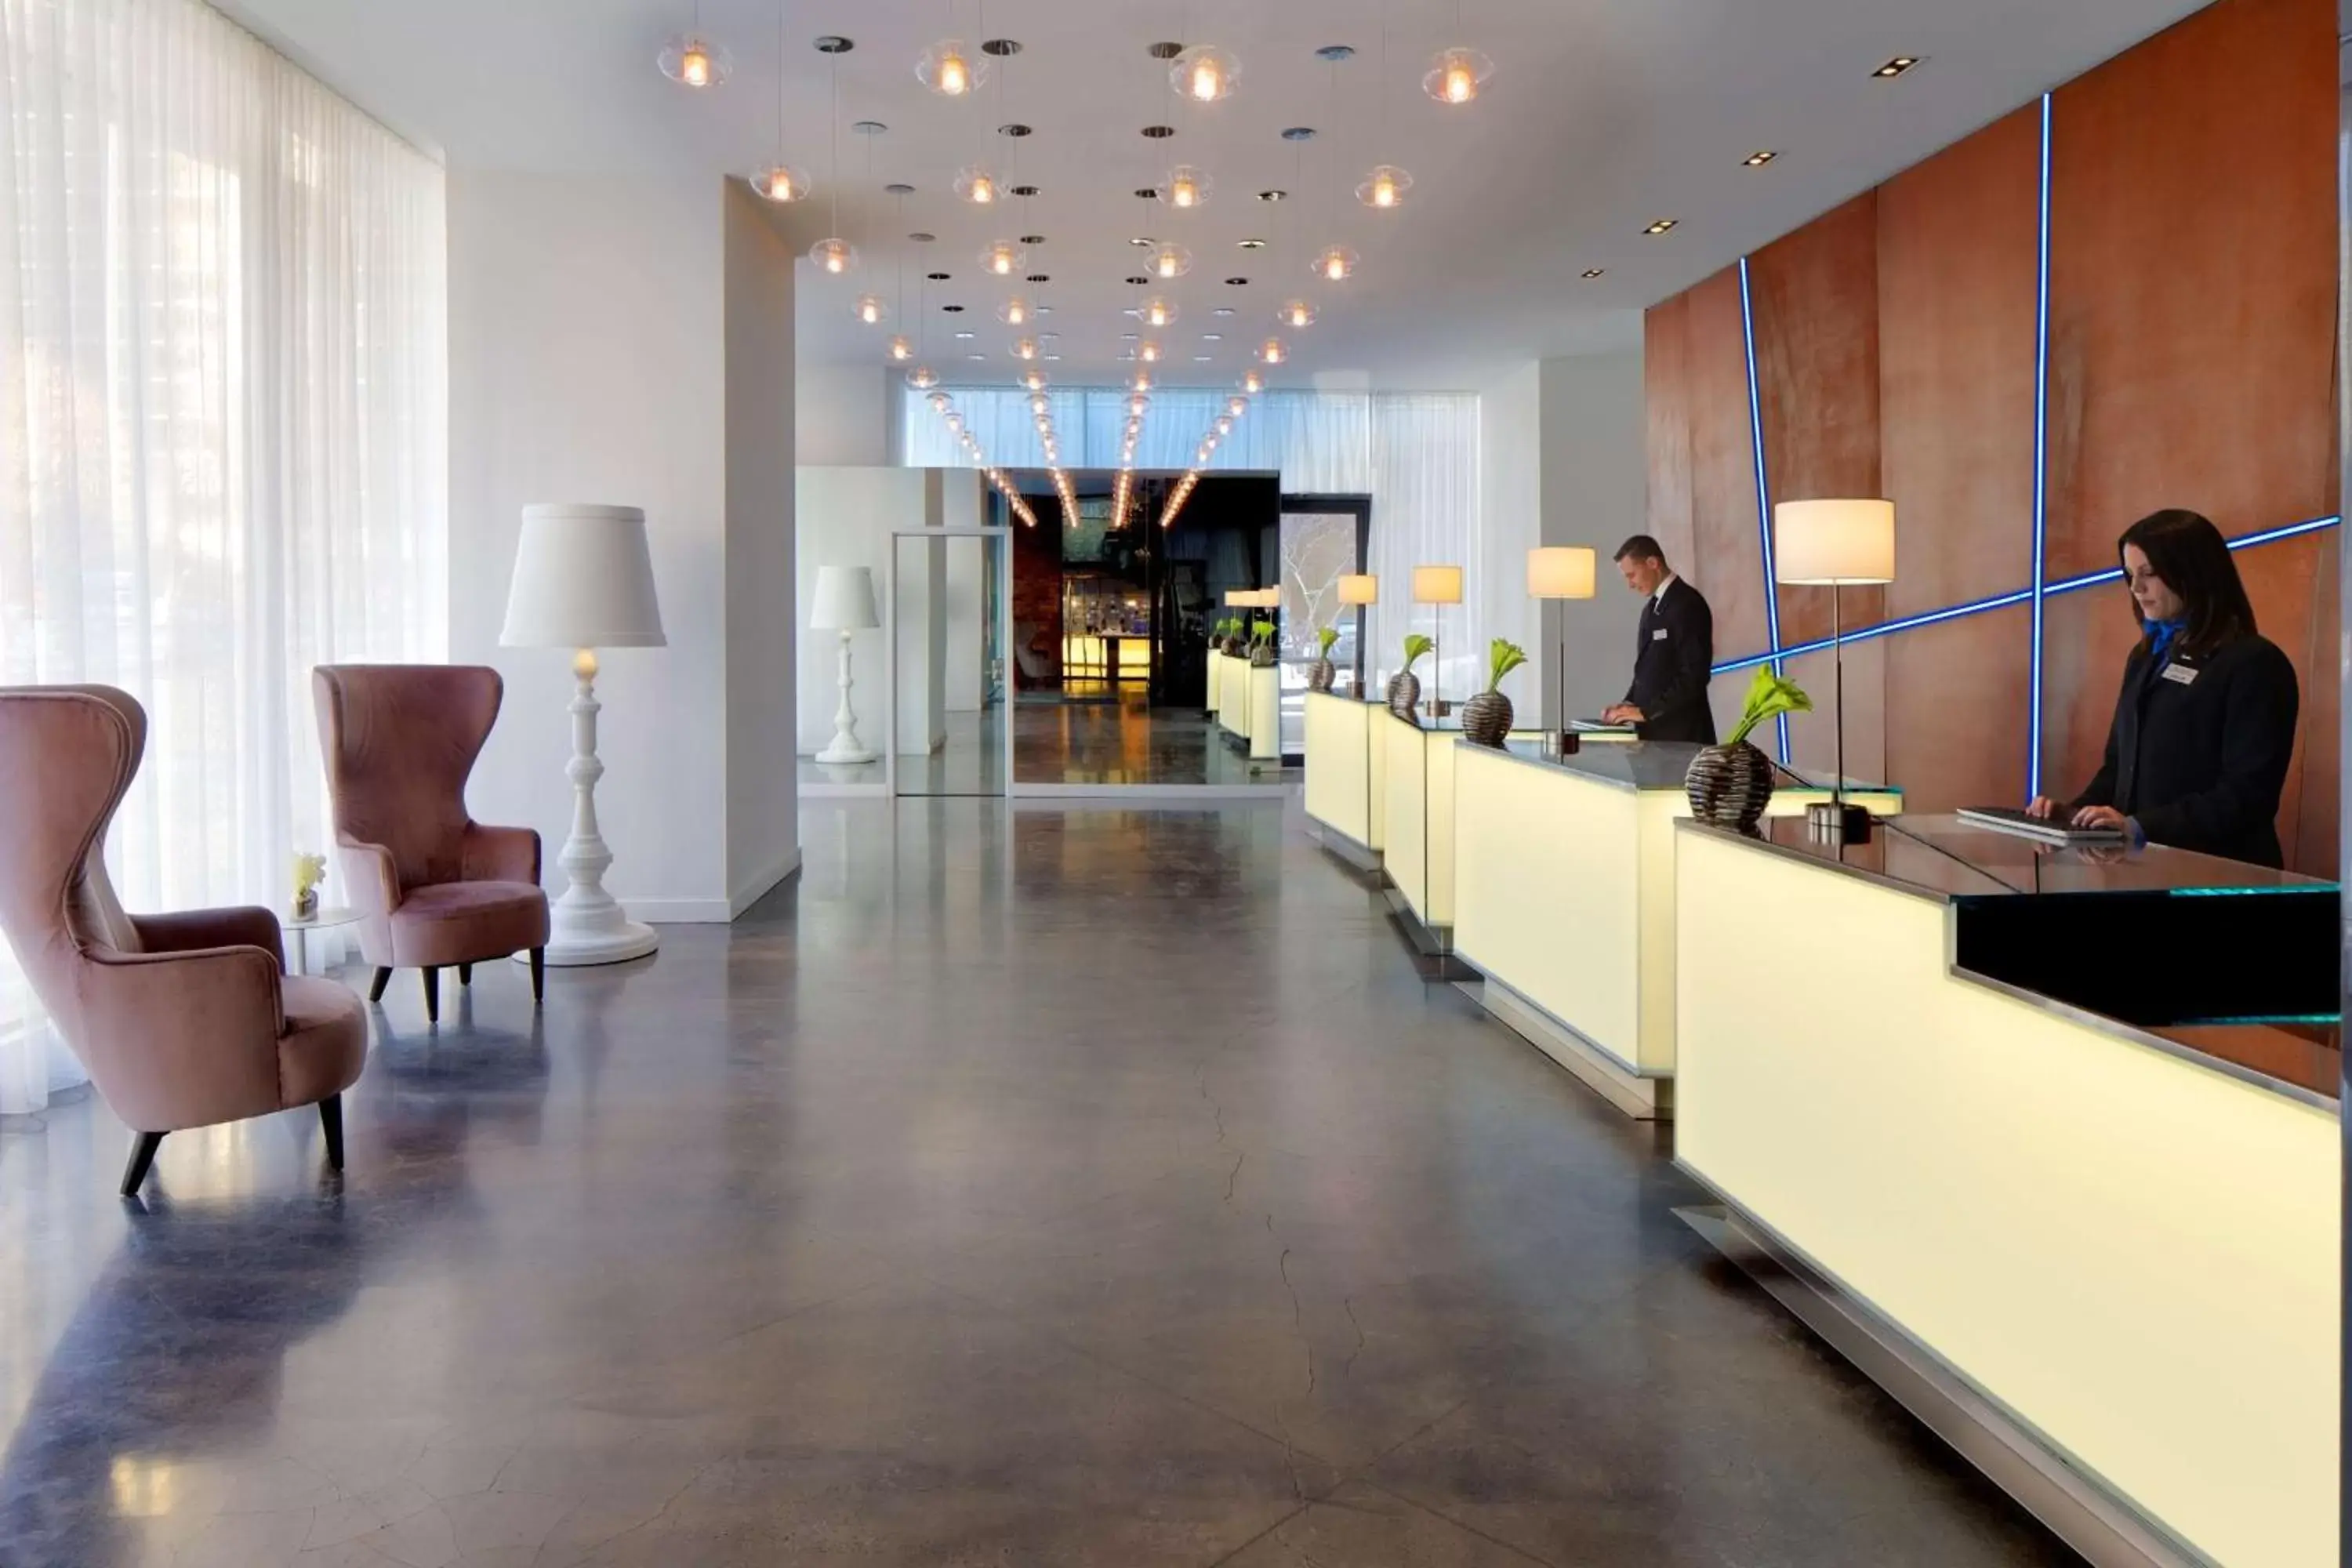 Lobby or reception in Radisson Blu Aqua Hotel Chicago